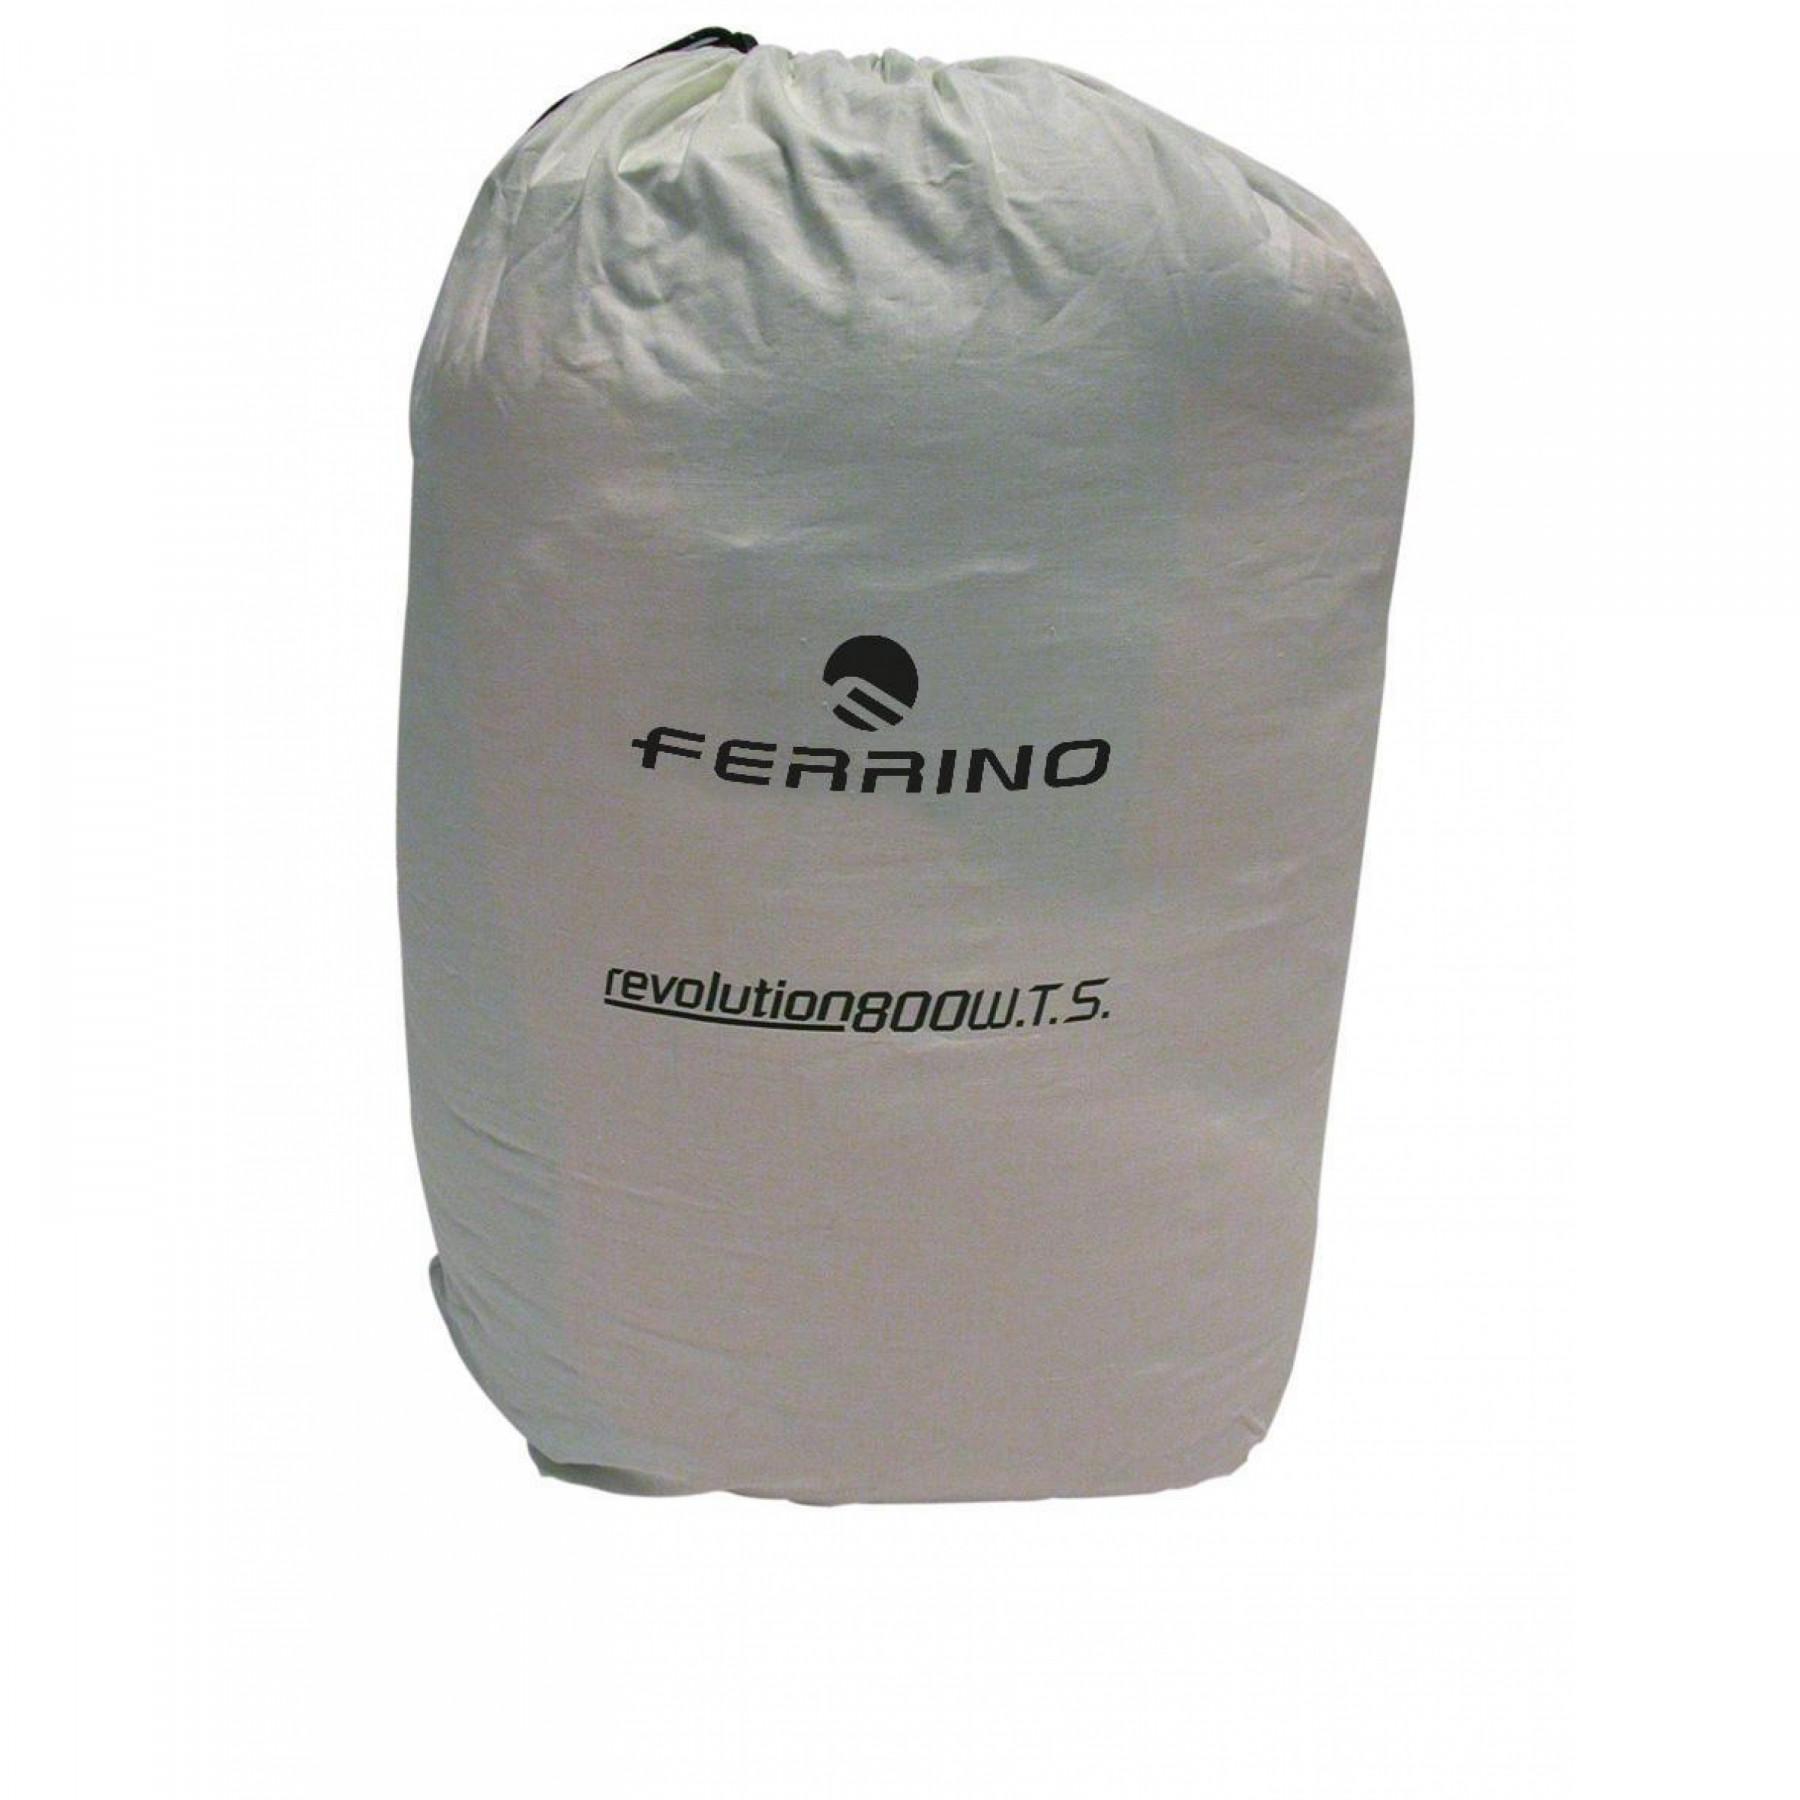 Sleeping bag Ferrino revolution 1200 wts rds down